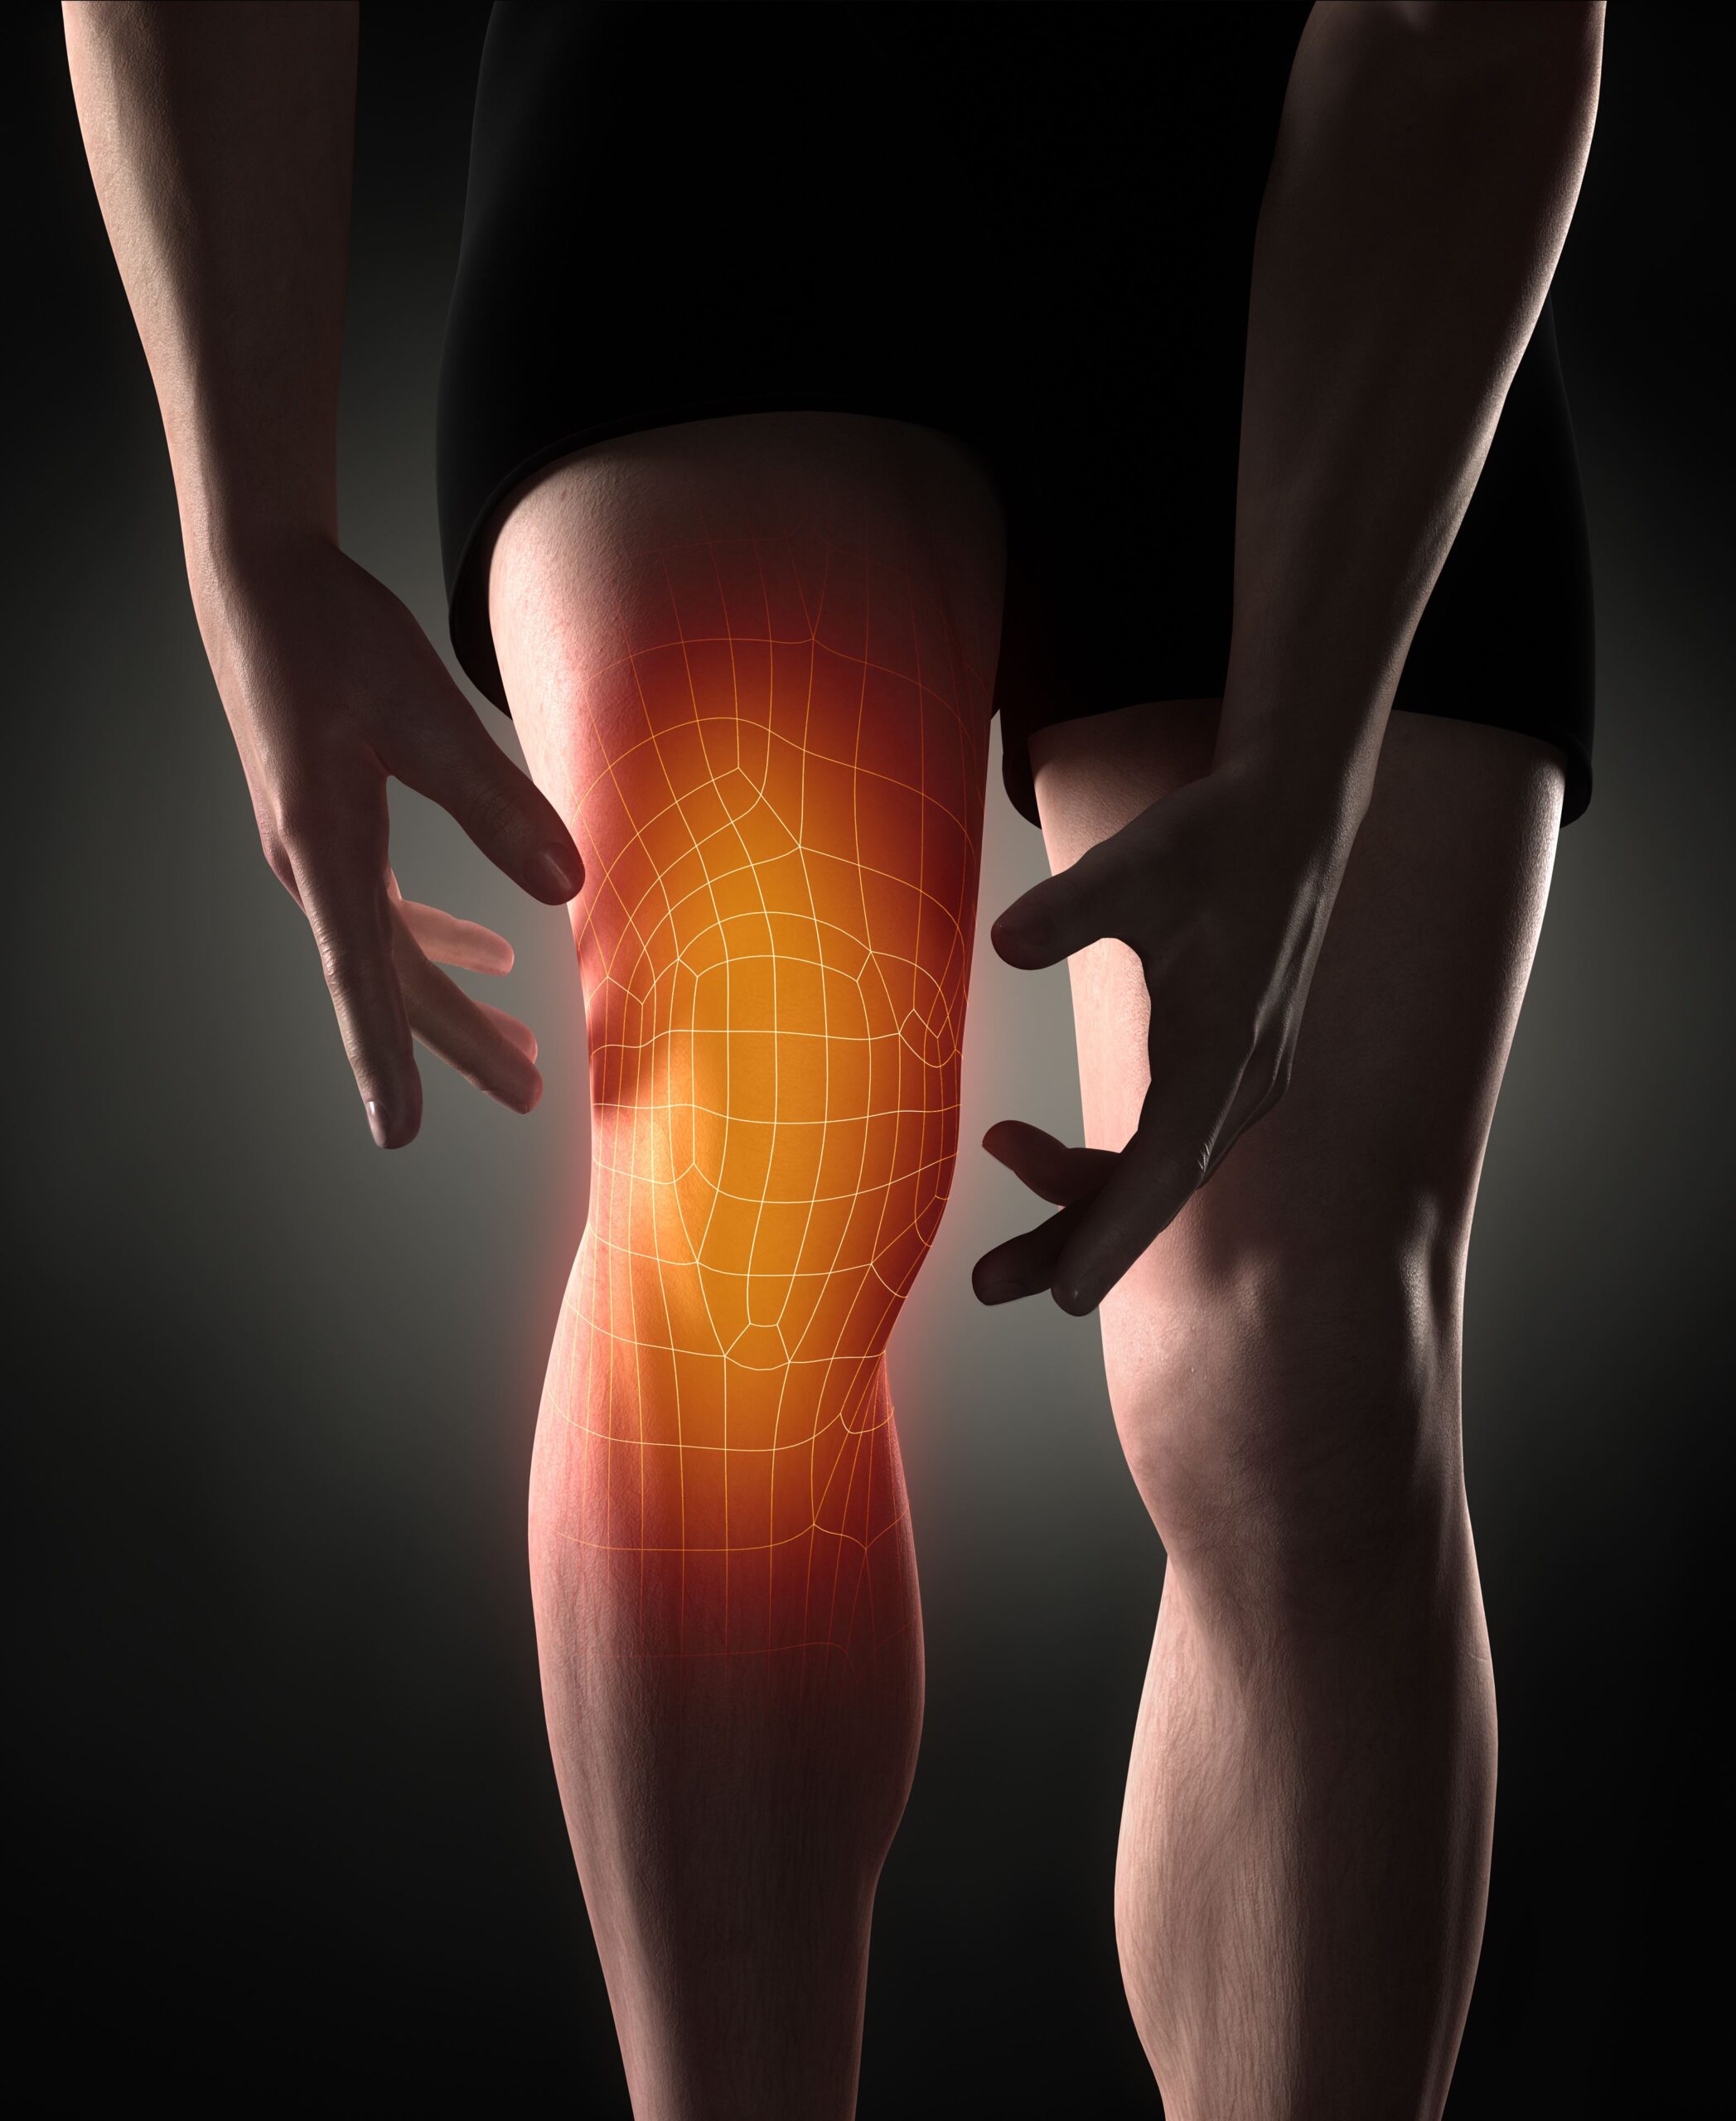 artroskopia kolana